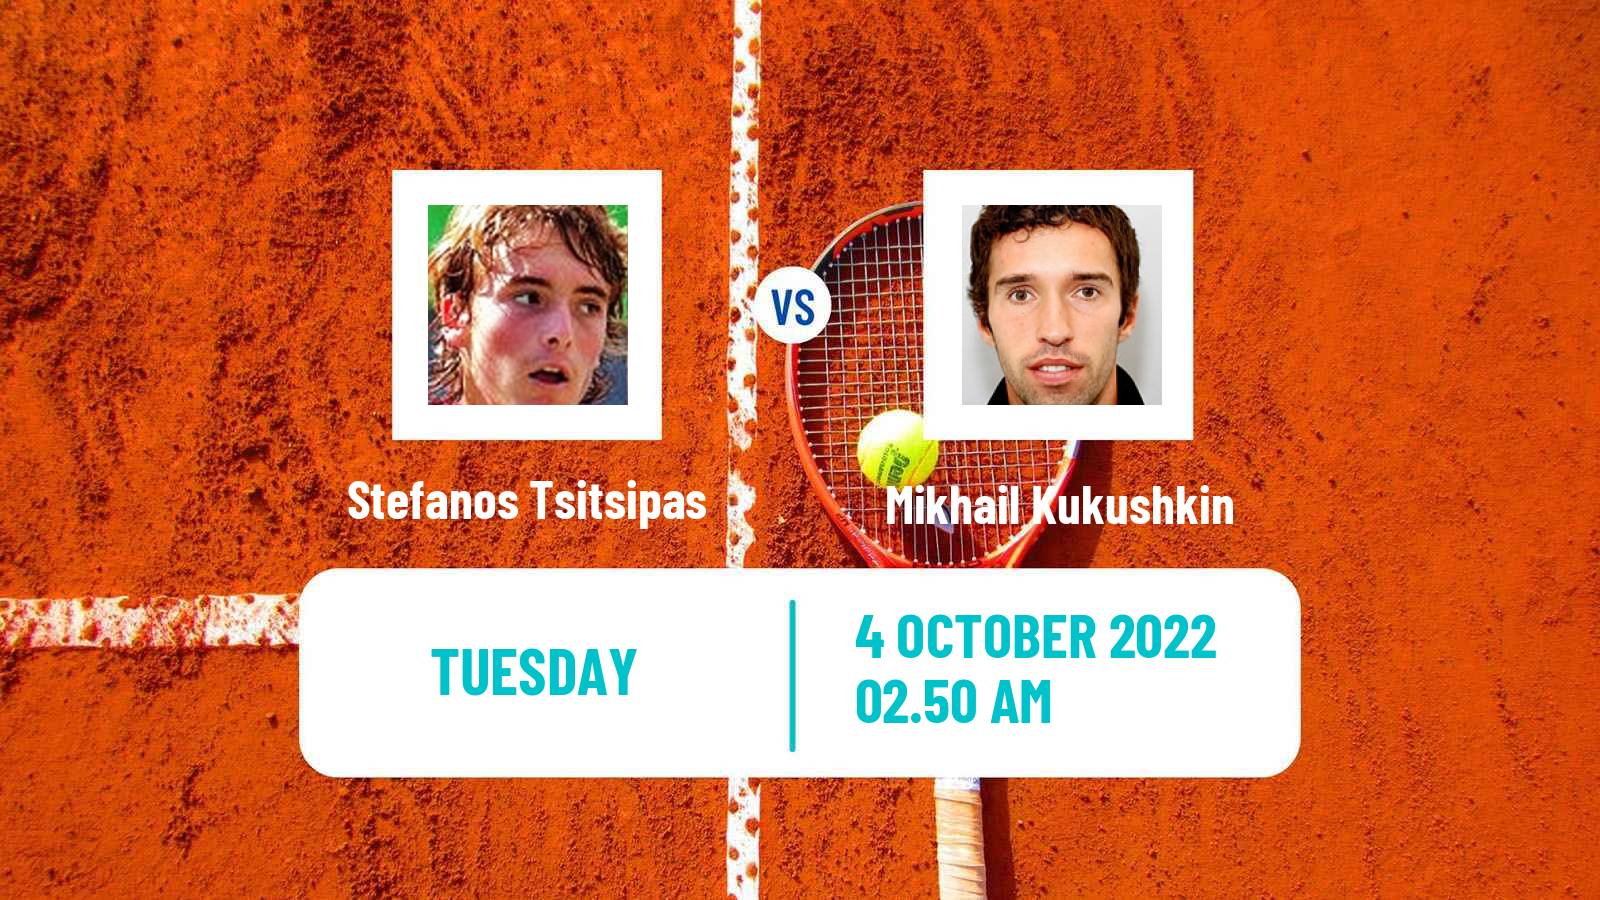 Tennis ATP Nur-Sultan Stefanos Tsitsipas - Mikhail Kukushkin